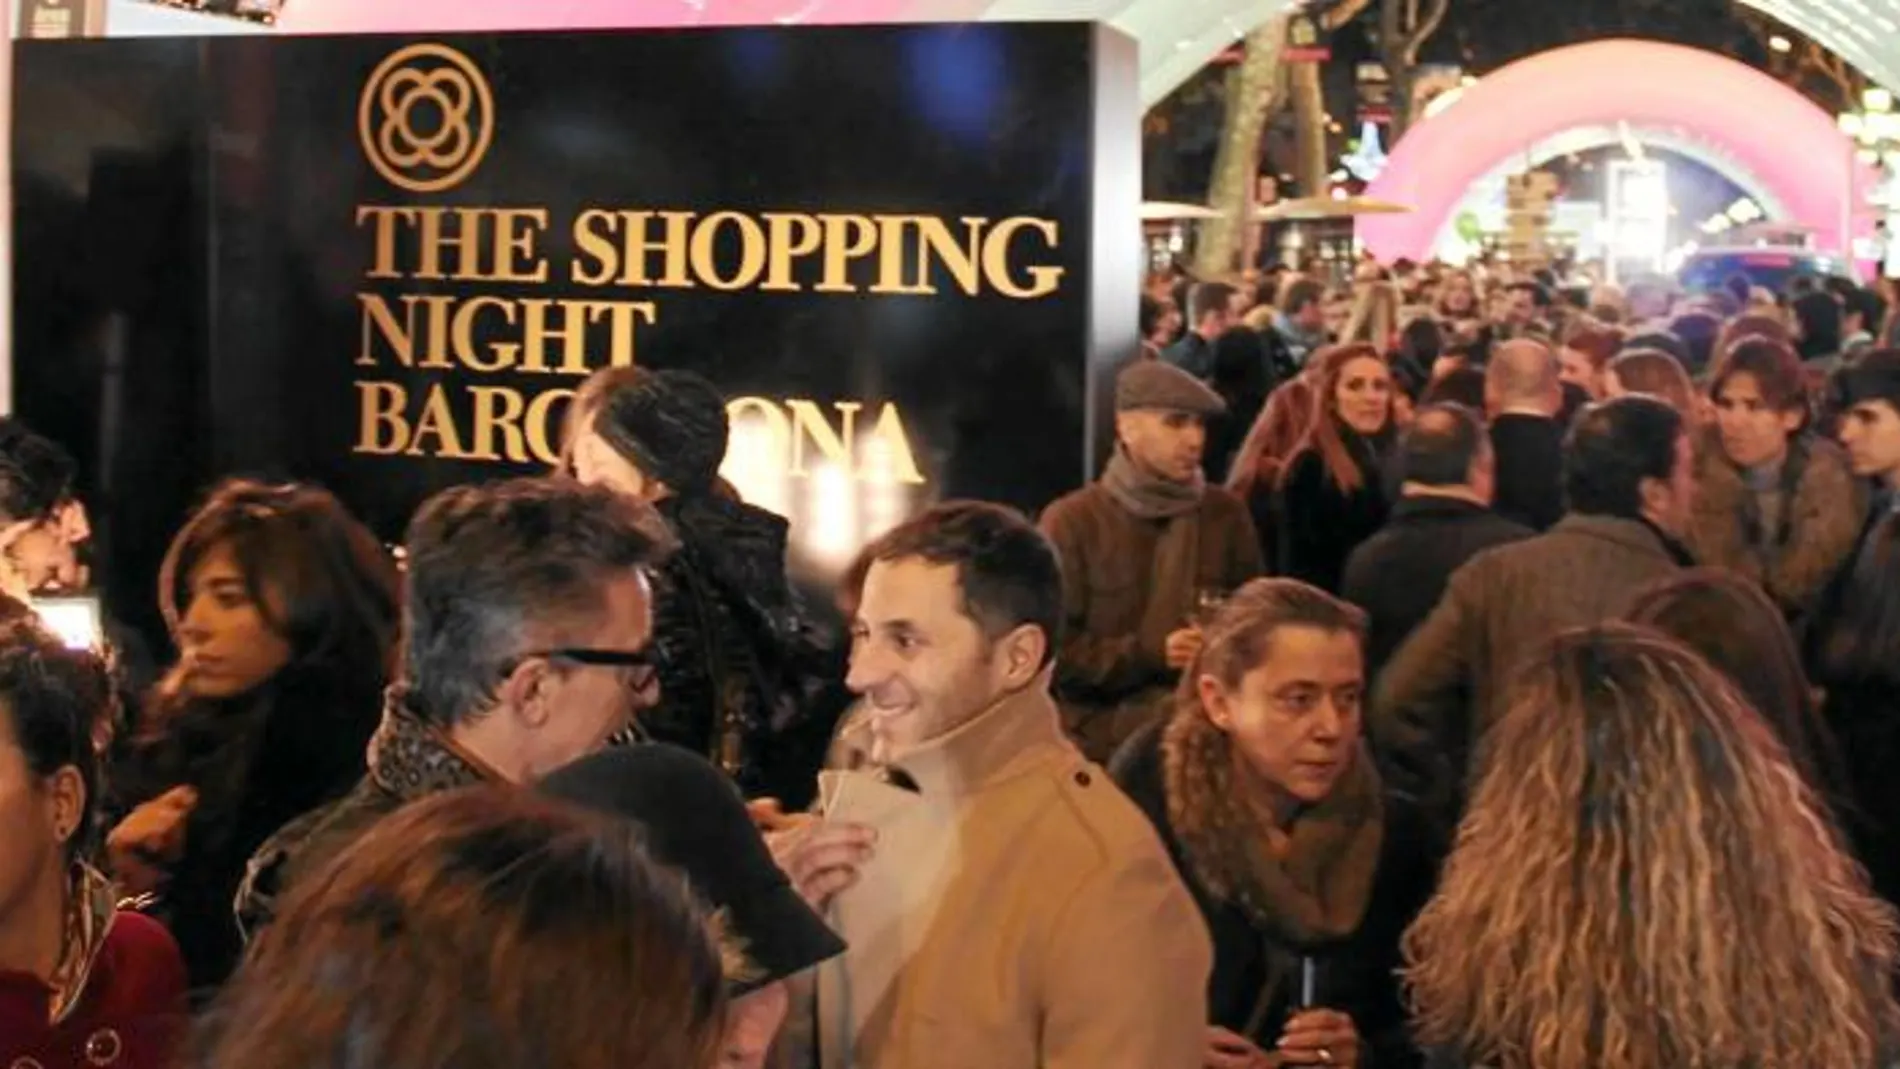 La campaña promocional de la Shopping Night, basada en la temática de «Alicia en el País de las Maravillas» ha contado con la modelo Laura Escanes que interpreta el papel de Alicia y con Ágatha Ruiz de la Prada como Reina de corazones